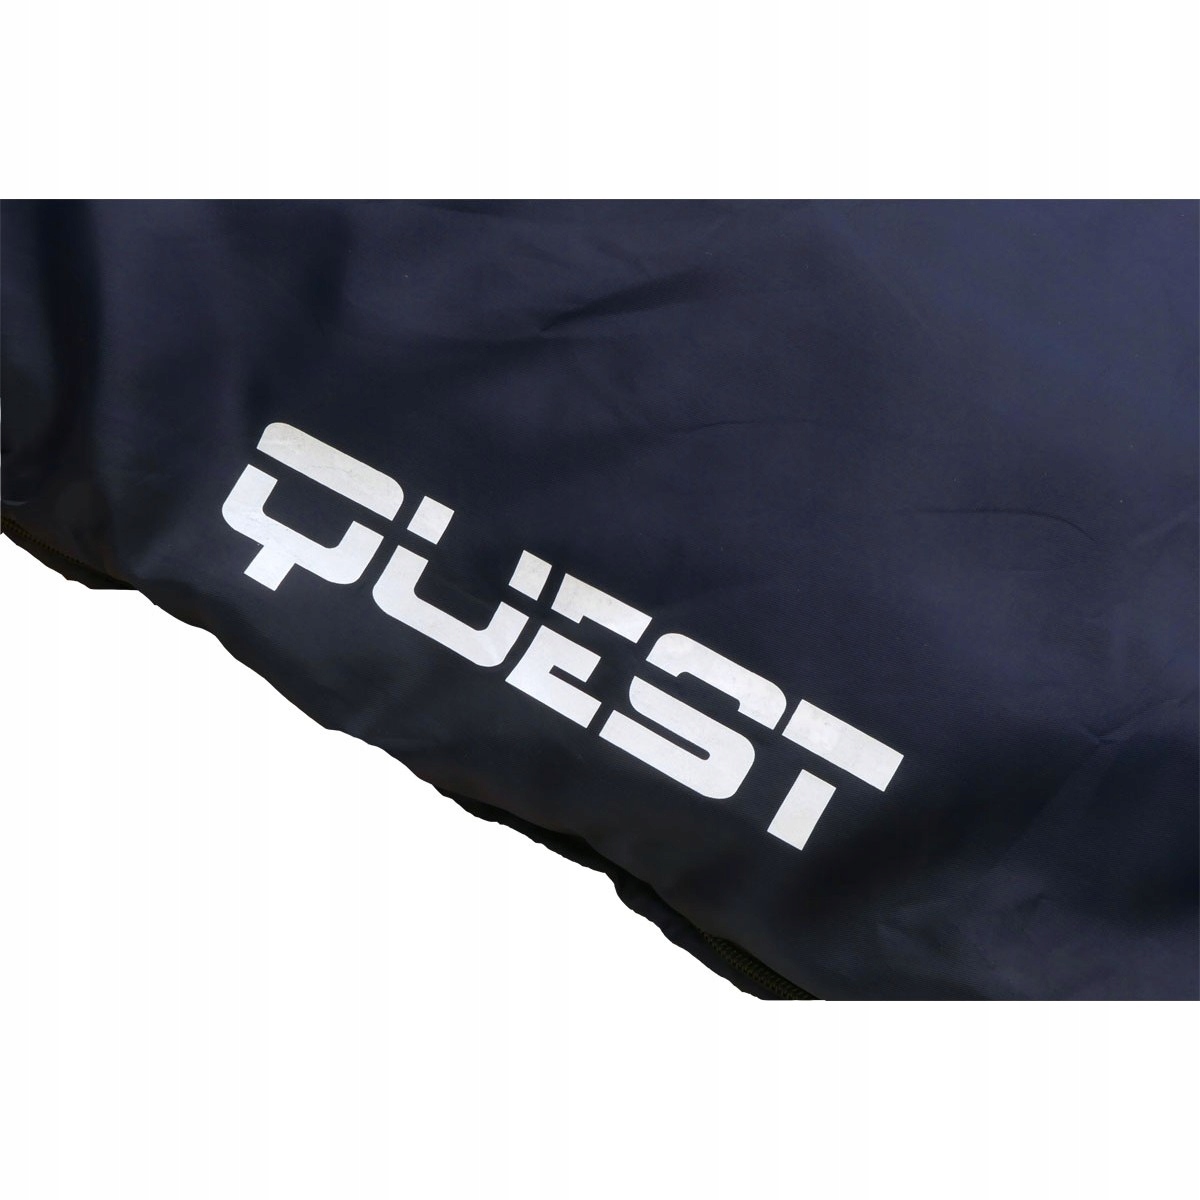 Туристический спальный мешок QUEST 210X70CM темно-синий бренд Royokamp